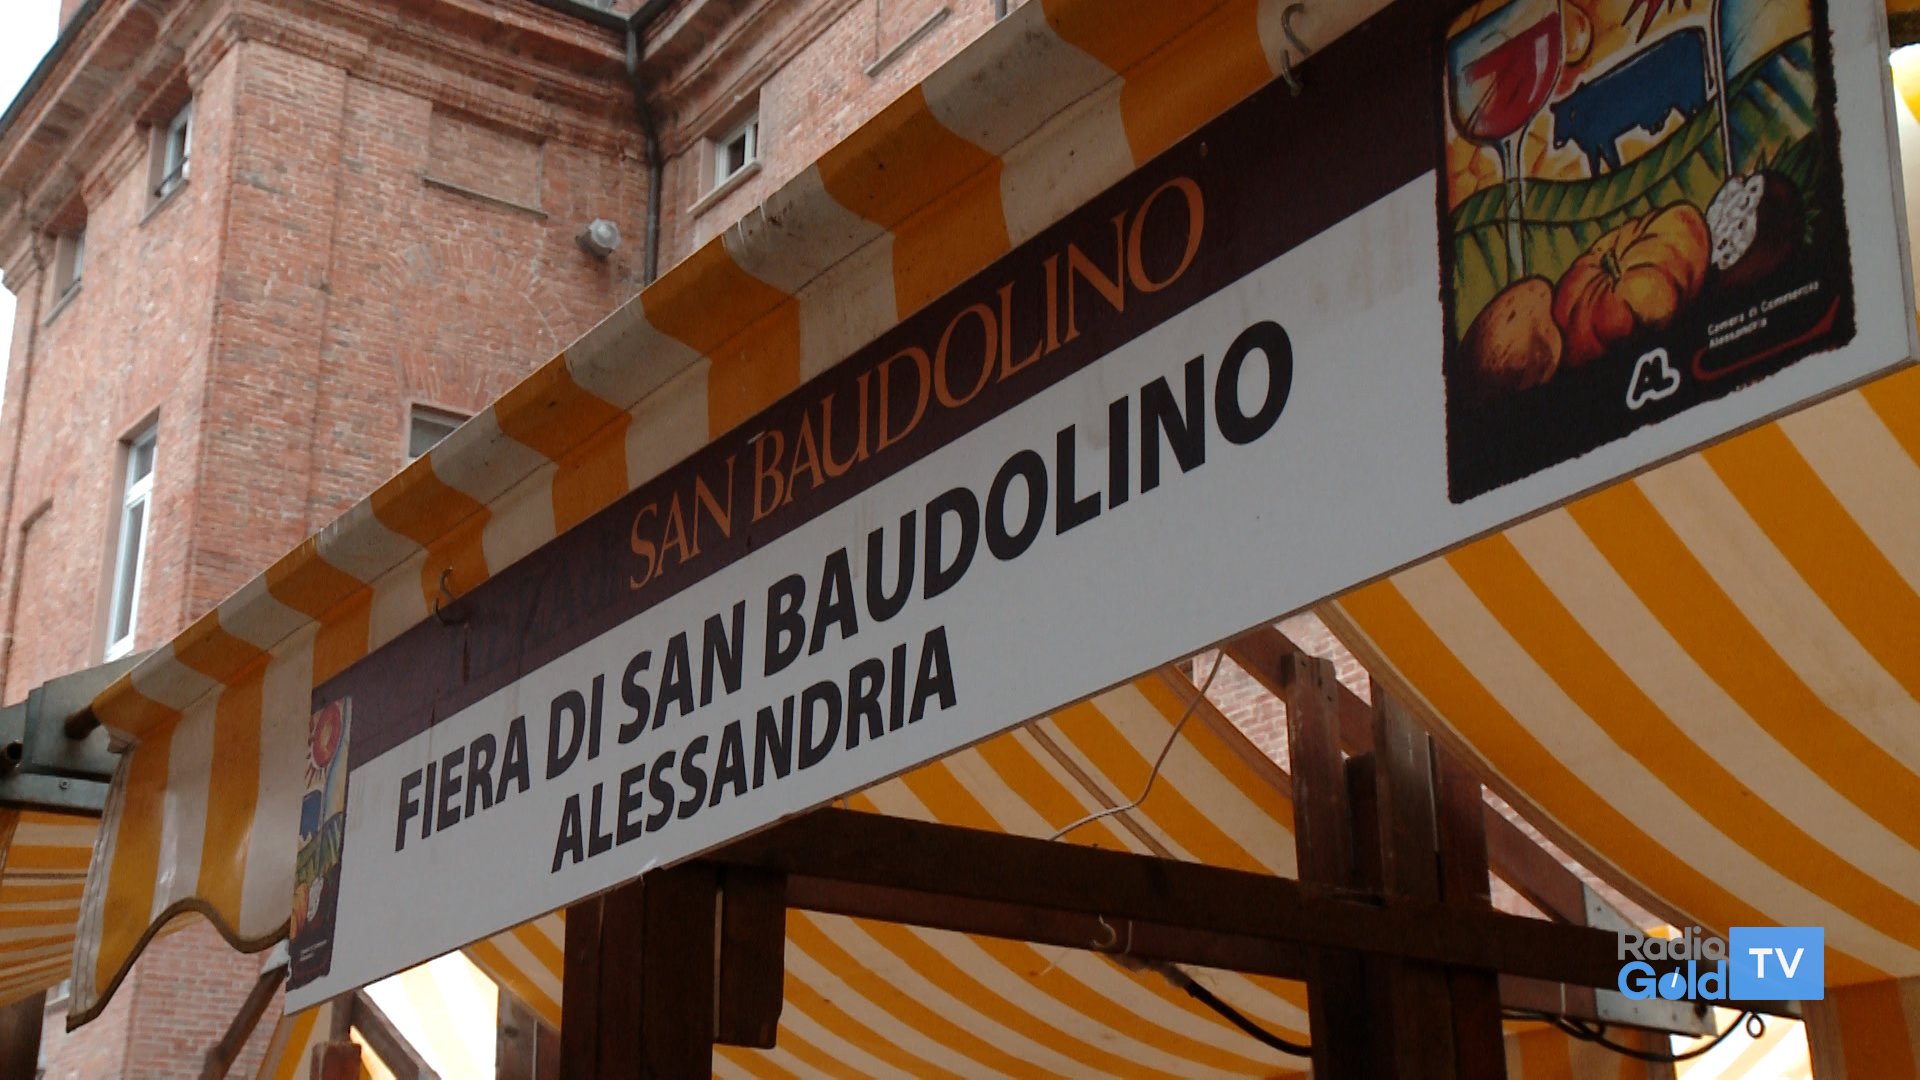 Il 13 e 14 novembre ad Alessandria torna la Fiera di San Baudolino